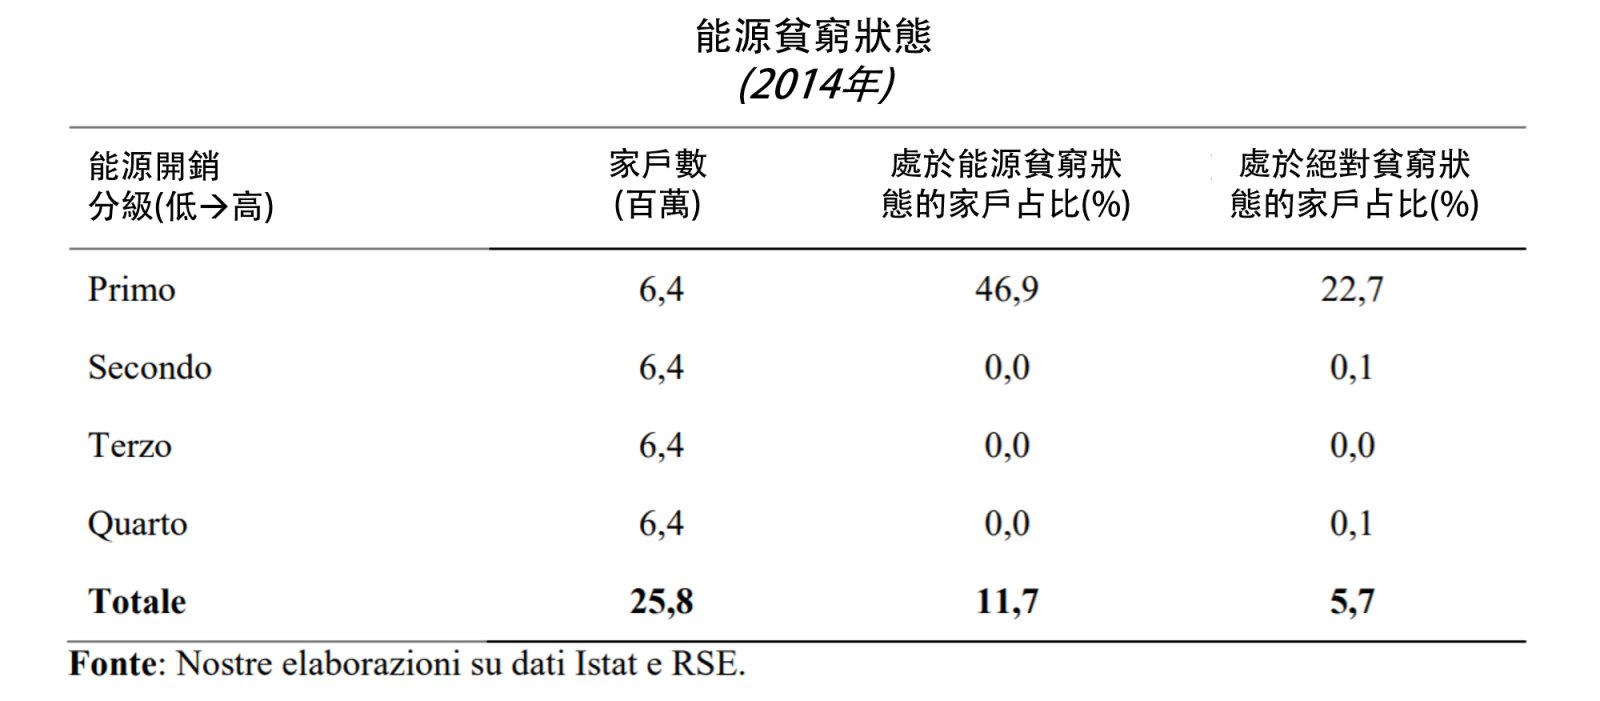 表2、義大利能源貧窮家庭占比估算結果(詳如內文所述)